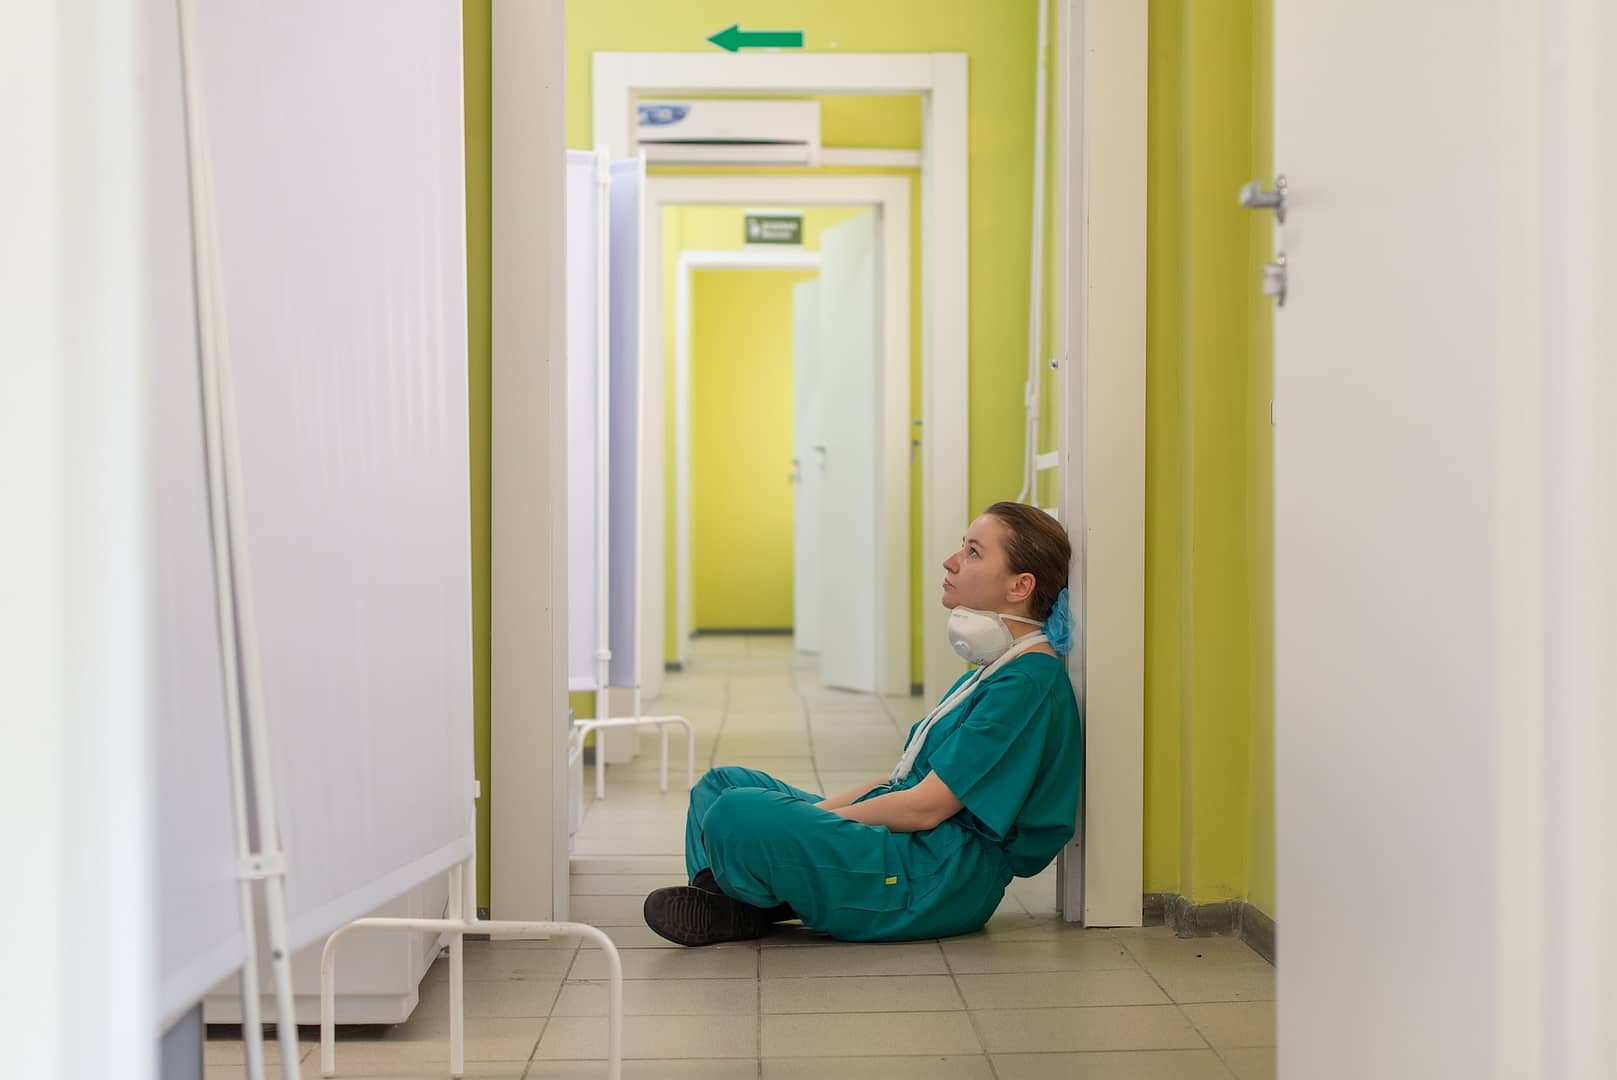 A nurse sat on the floor of a hospital